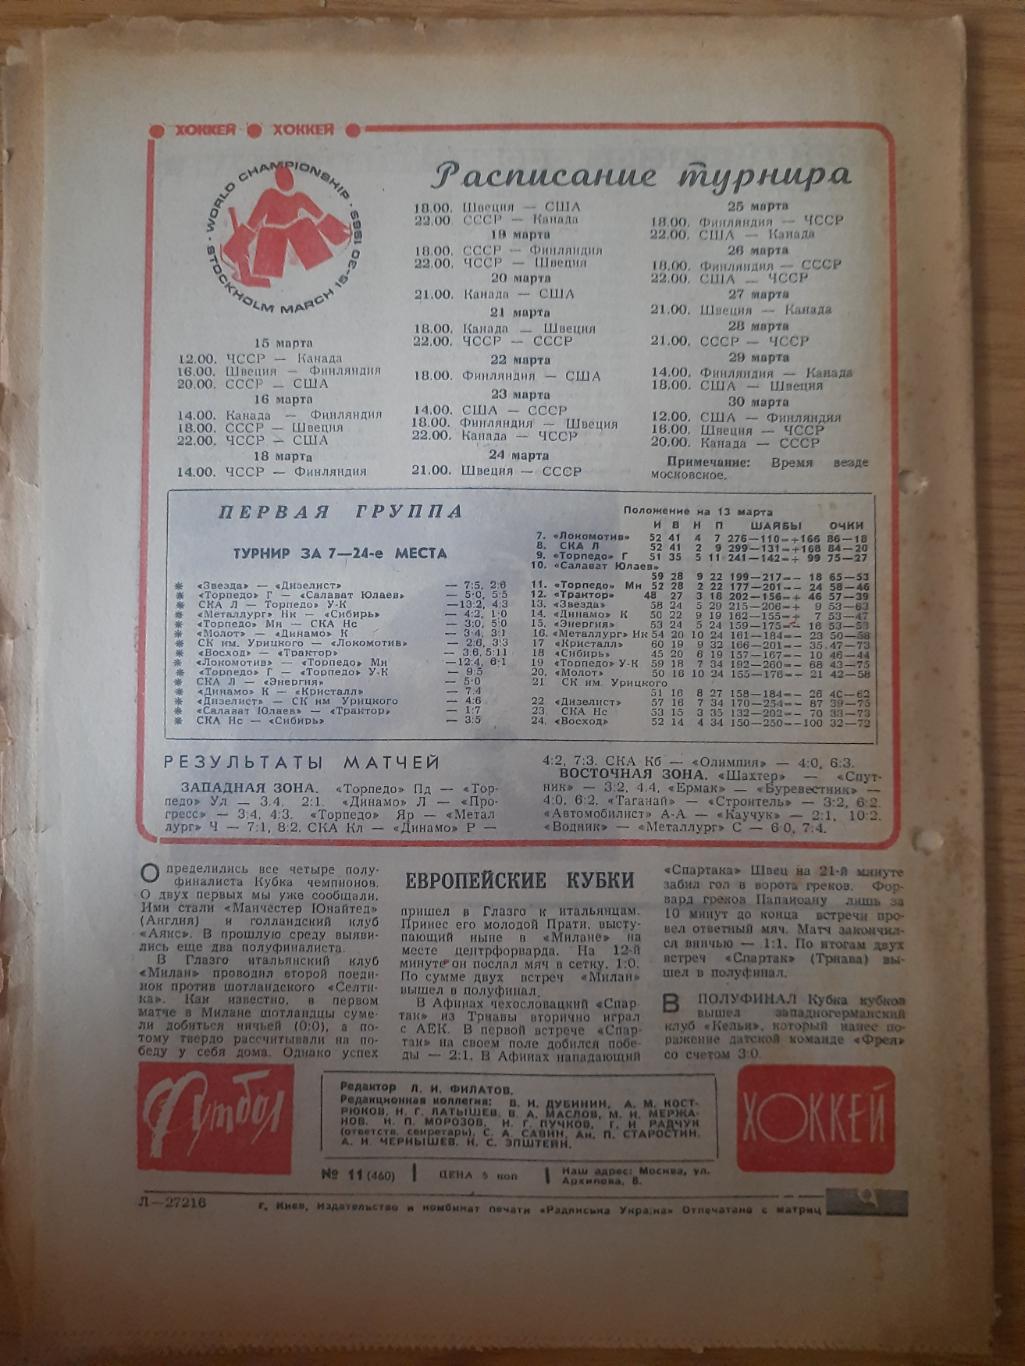 еженедельник футбол-хоккей #11, 1969. 5